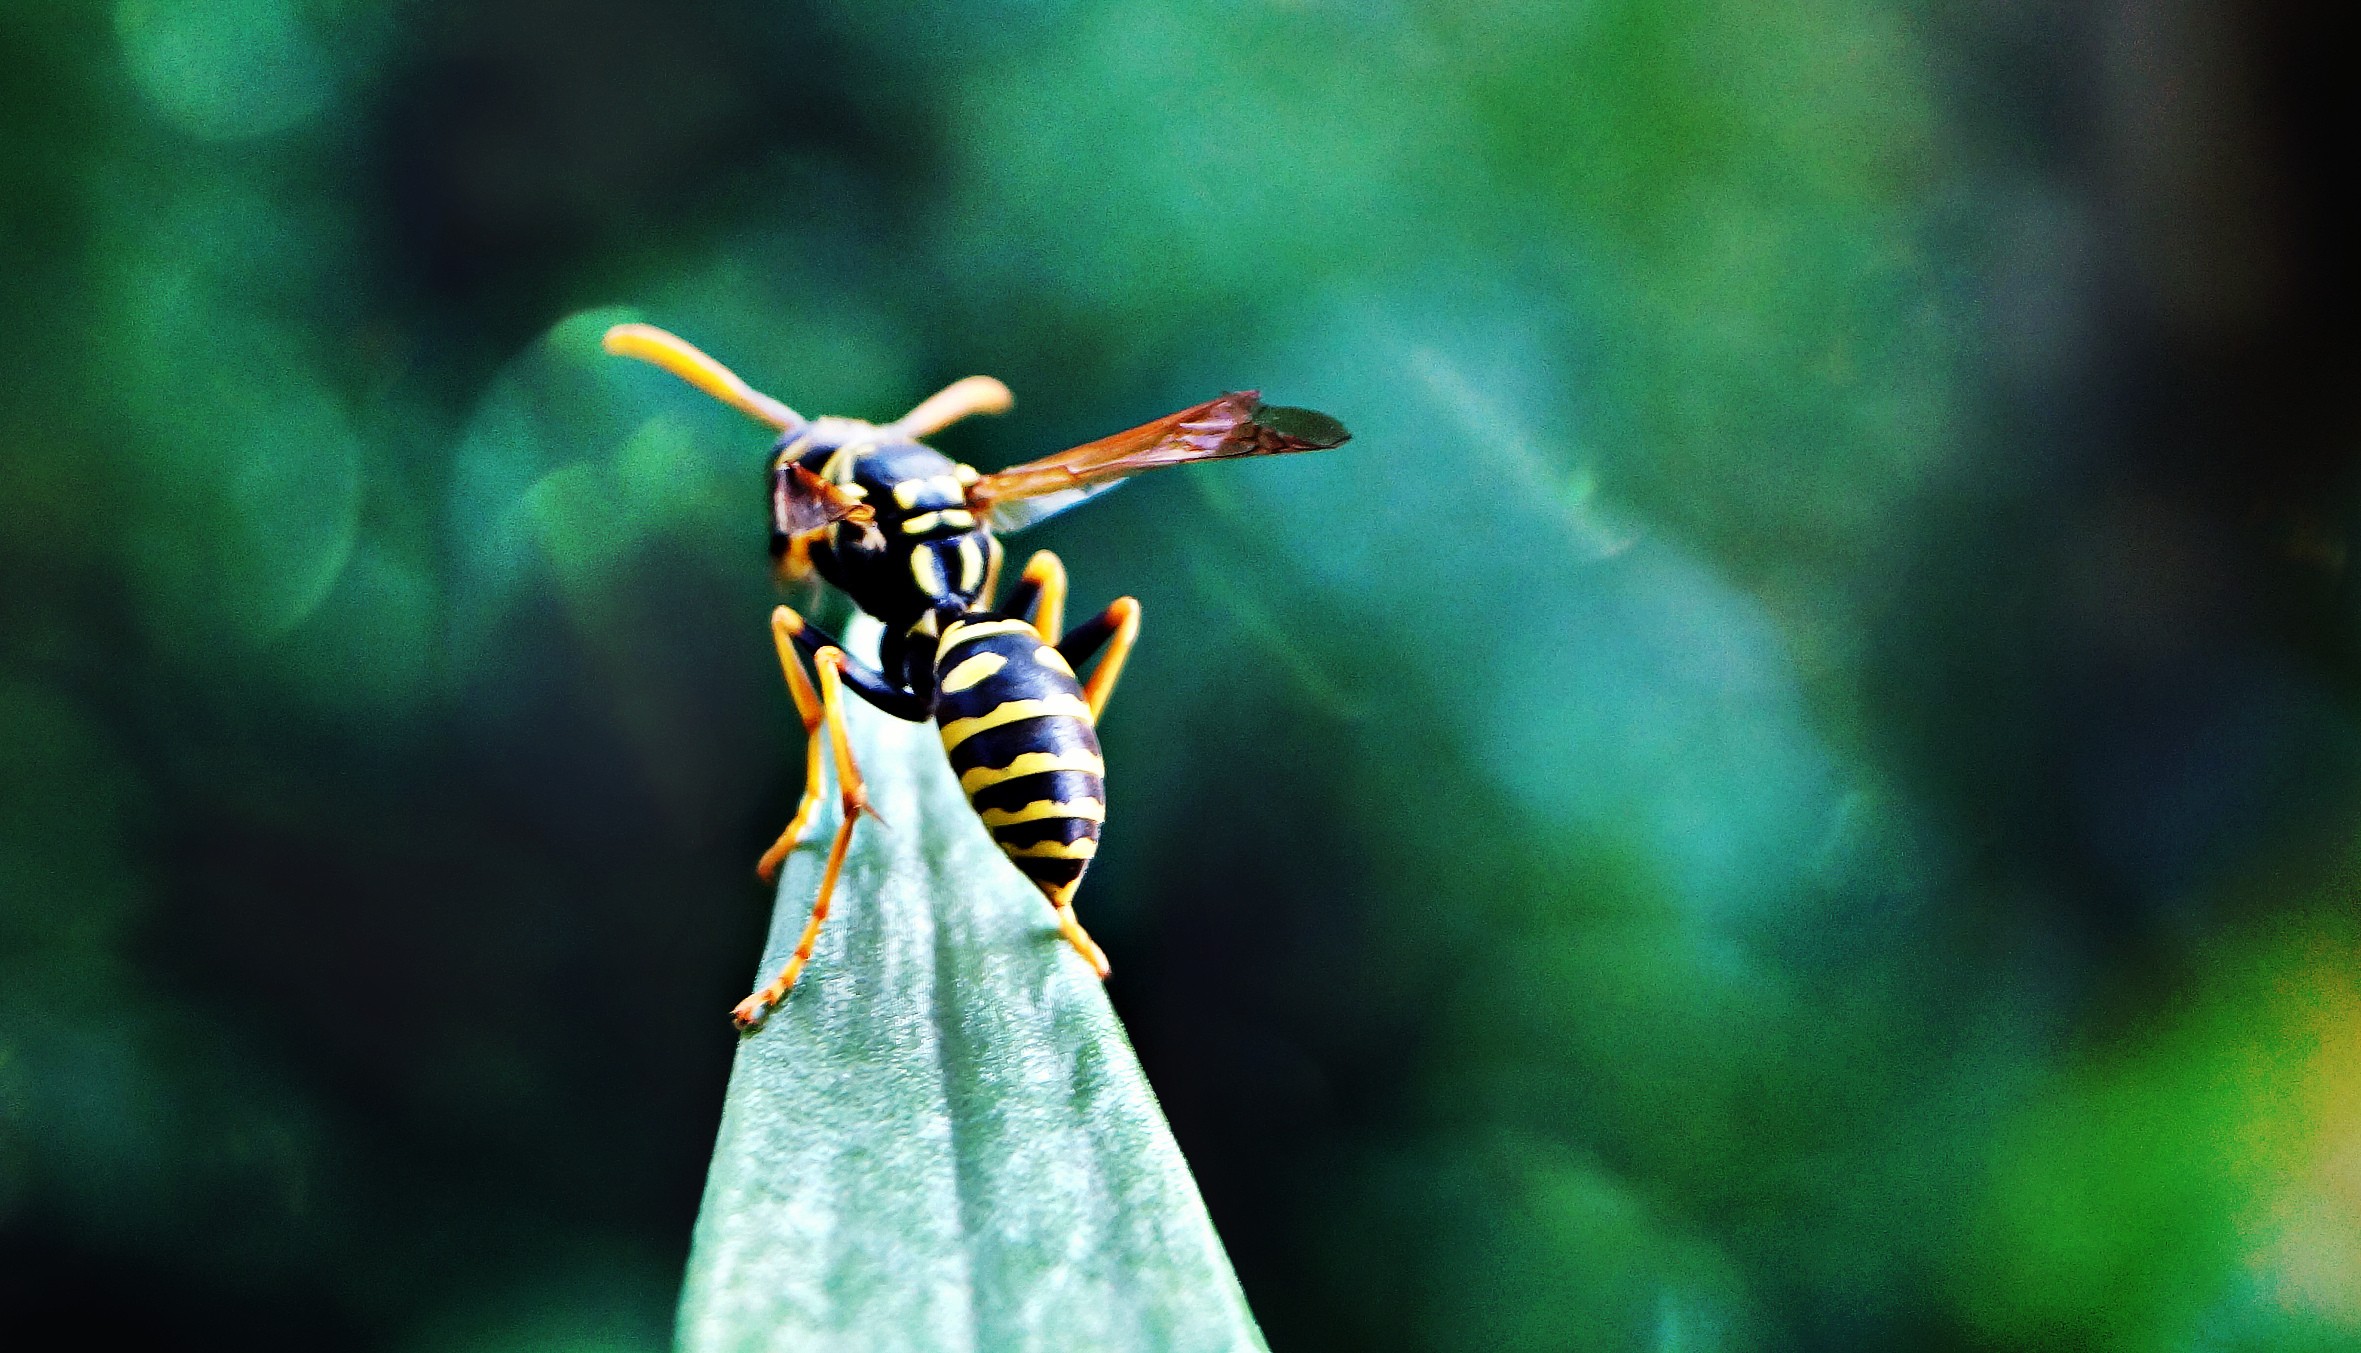 Wasps 2361x1353